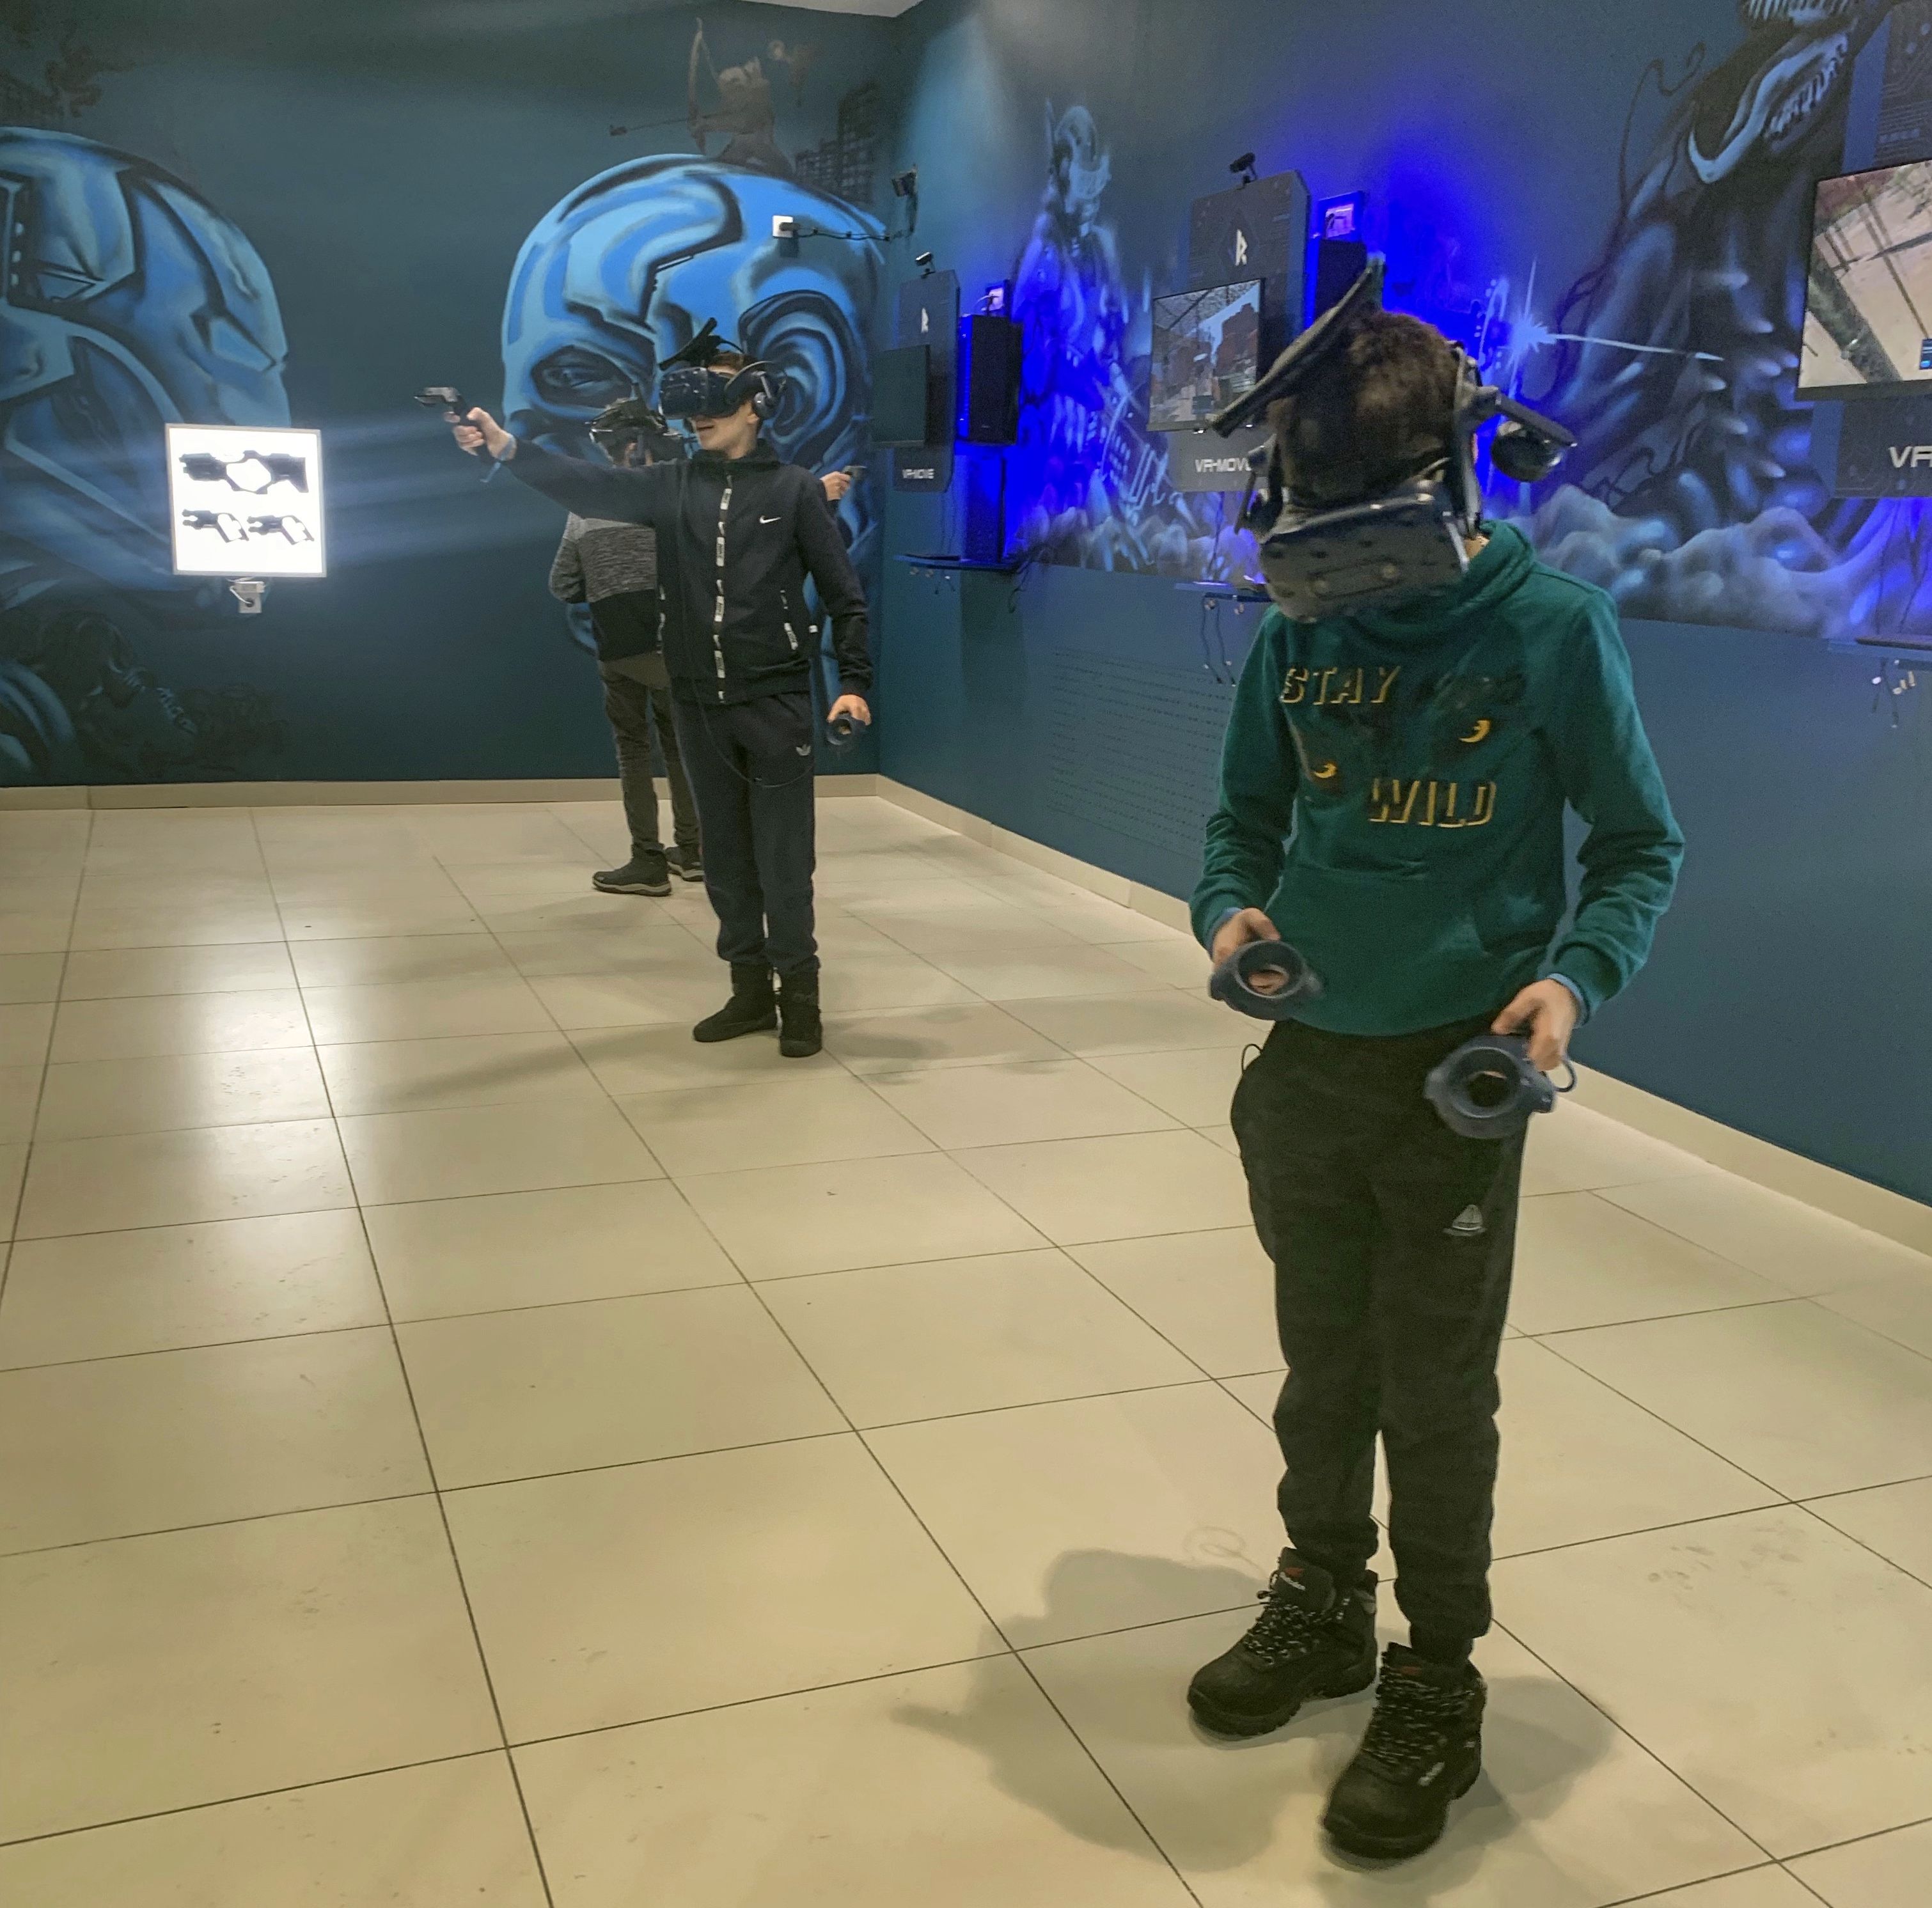 Турнир в виртуальной реальности впервые пройдет в Ижевске